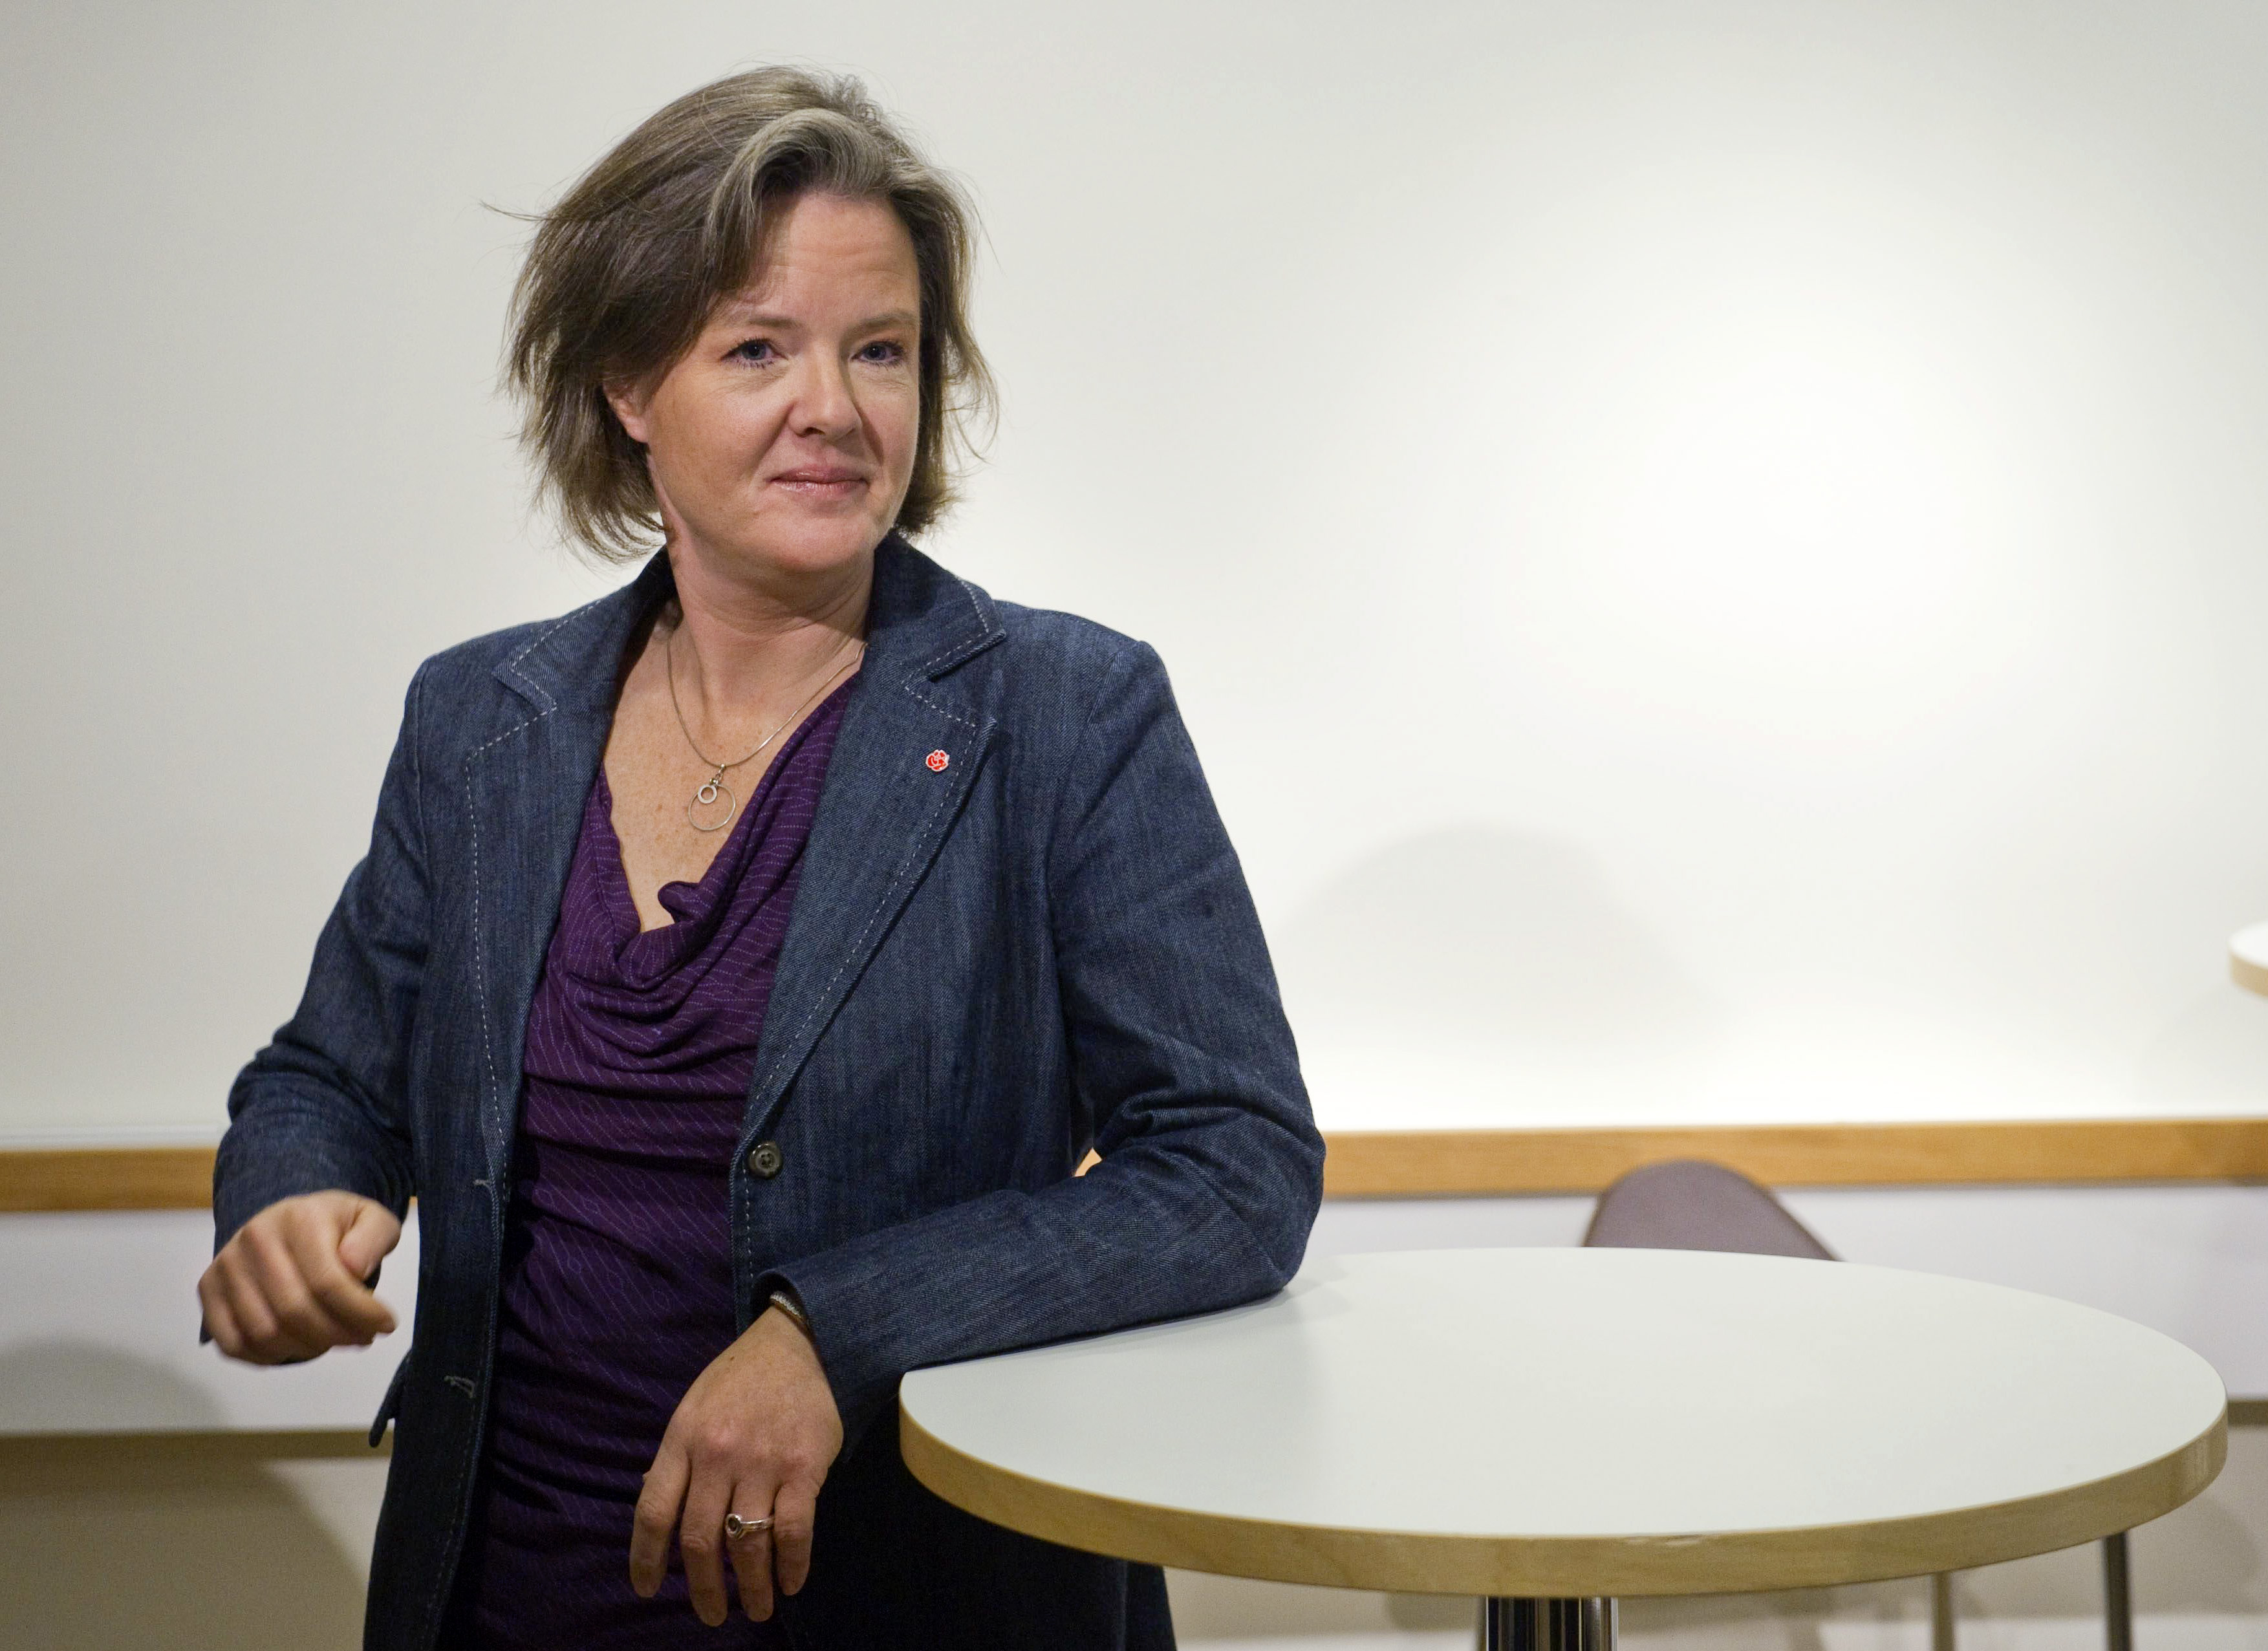 Håkan Juholt, Politik, Oppositionen, Partiledare, Socialdemokraterna